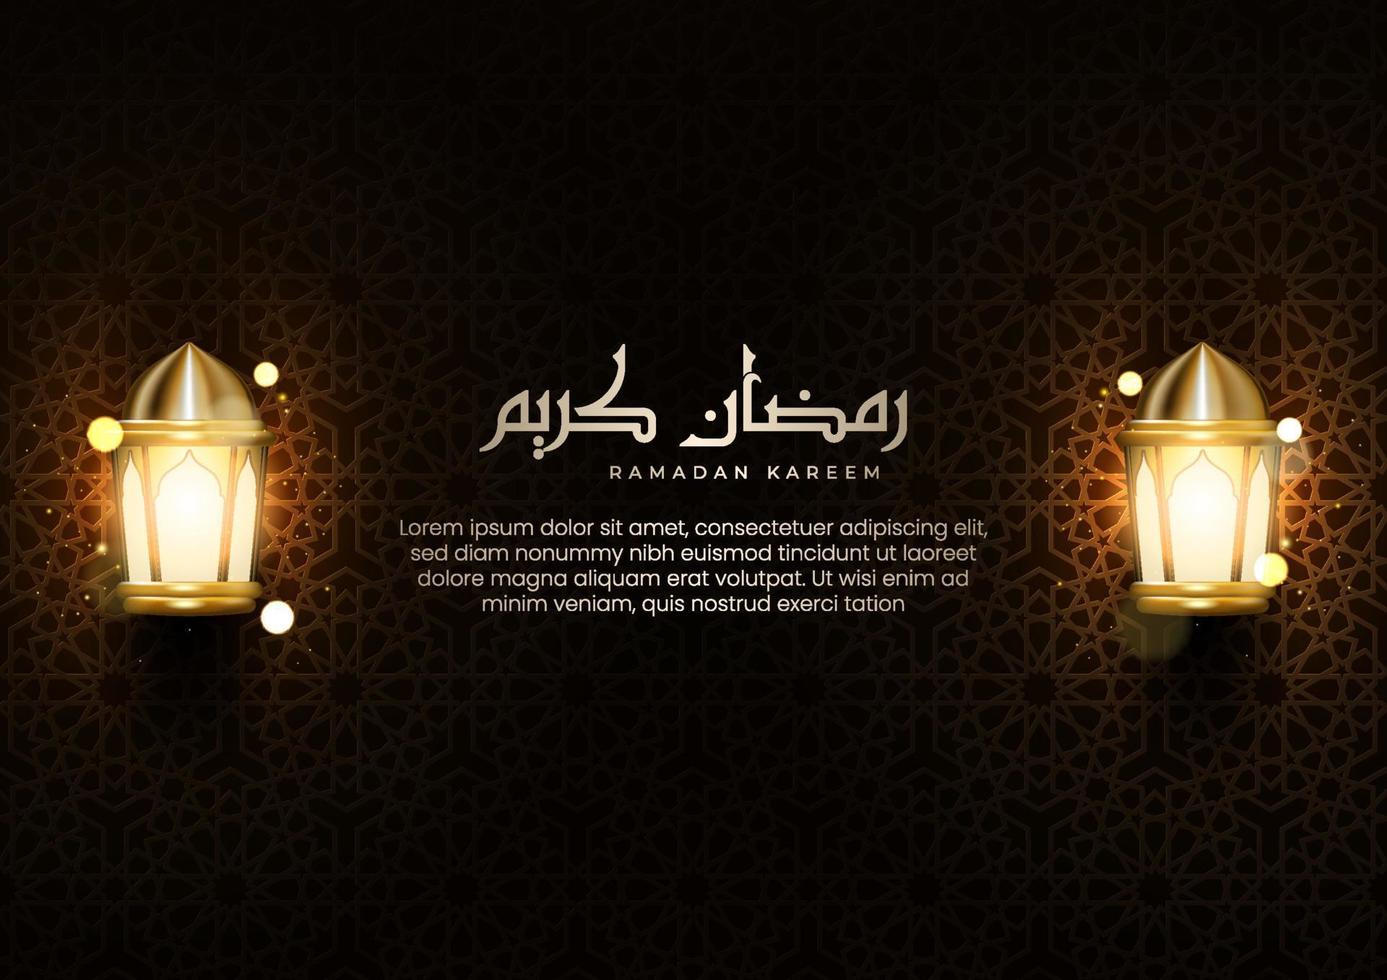 realistische islamitische wenskaart met arabische kalligrafie en glanzende lantaarns. illustratie van ramadan kareem-viering met arabische patroon getextureerde muren vector